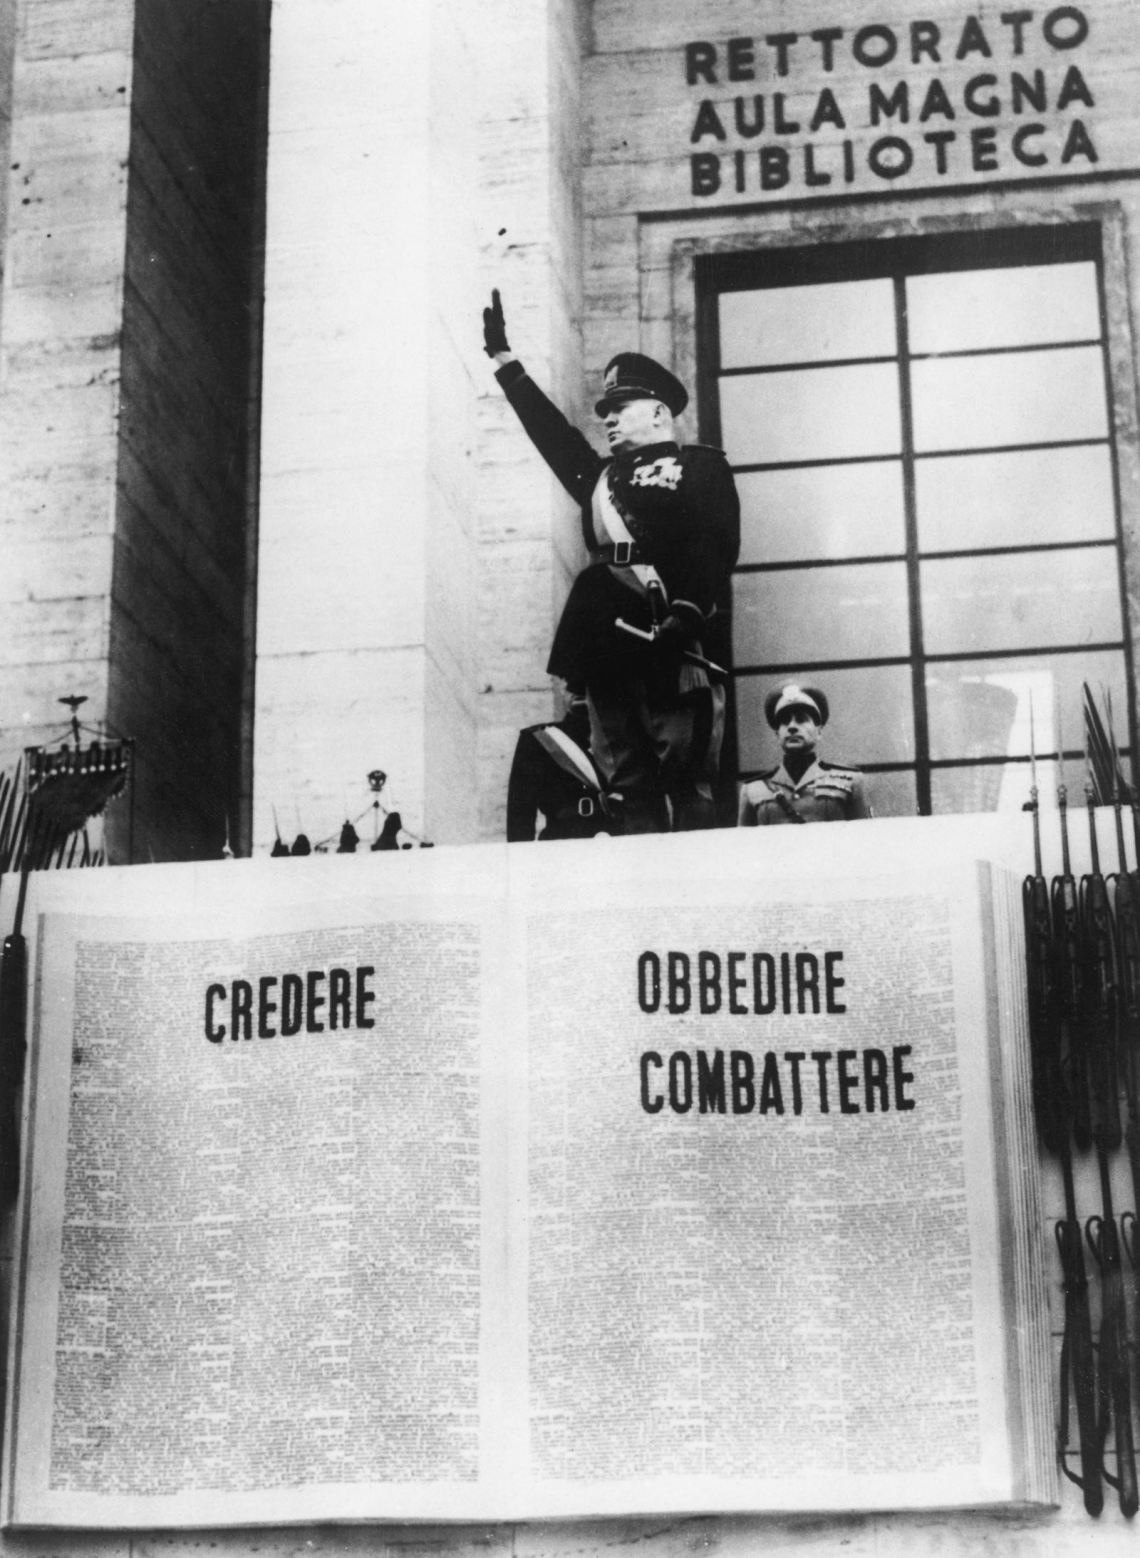 Benito Mussolini saluting